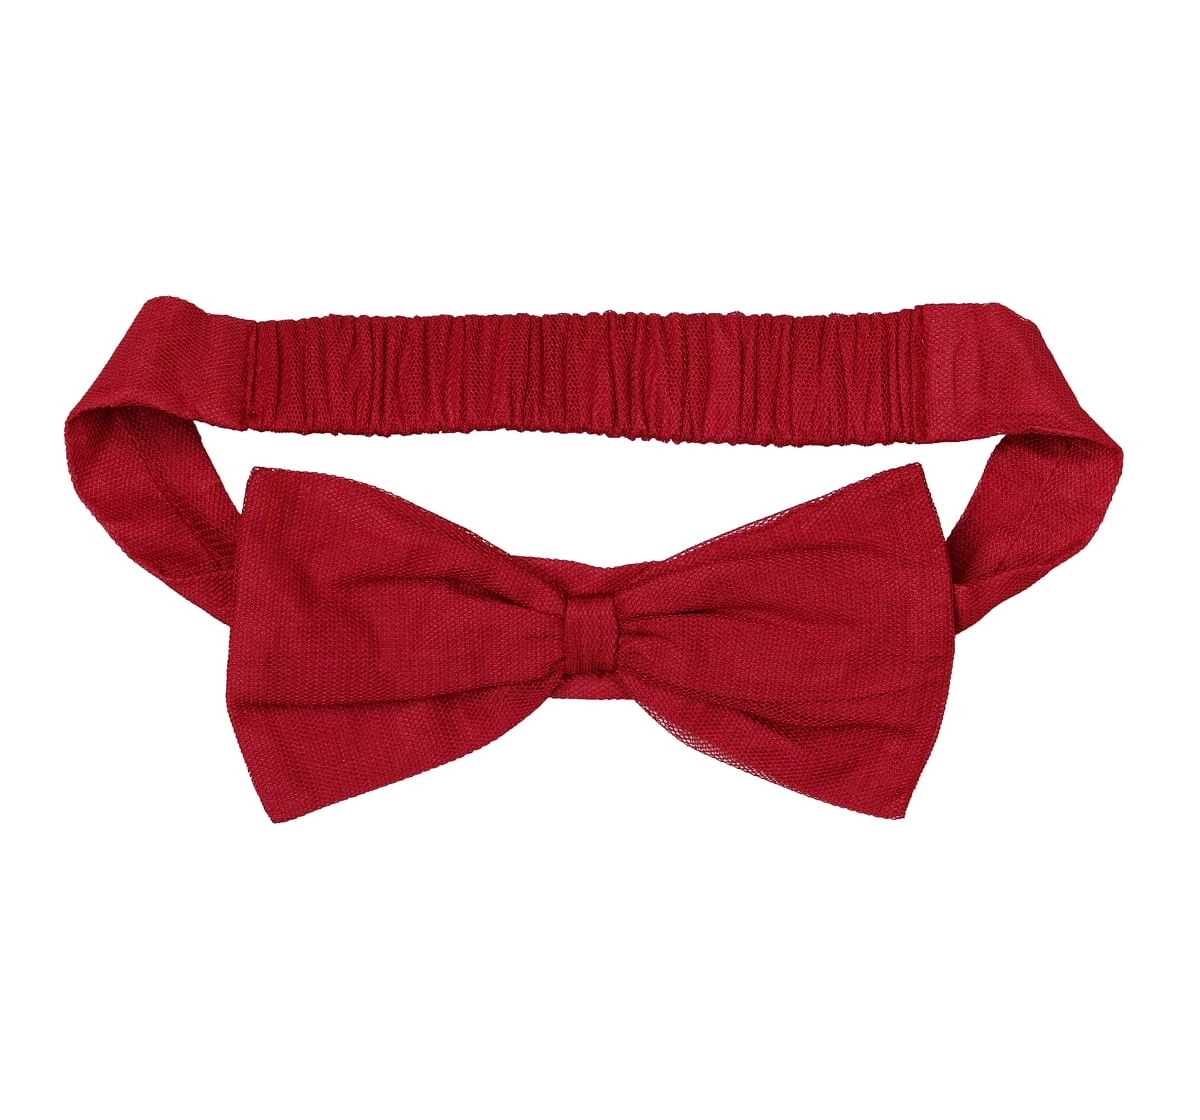 H by Hamleys Girls Sleeveless Partywear Dress 3D Flower Detail-Red